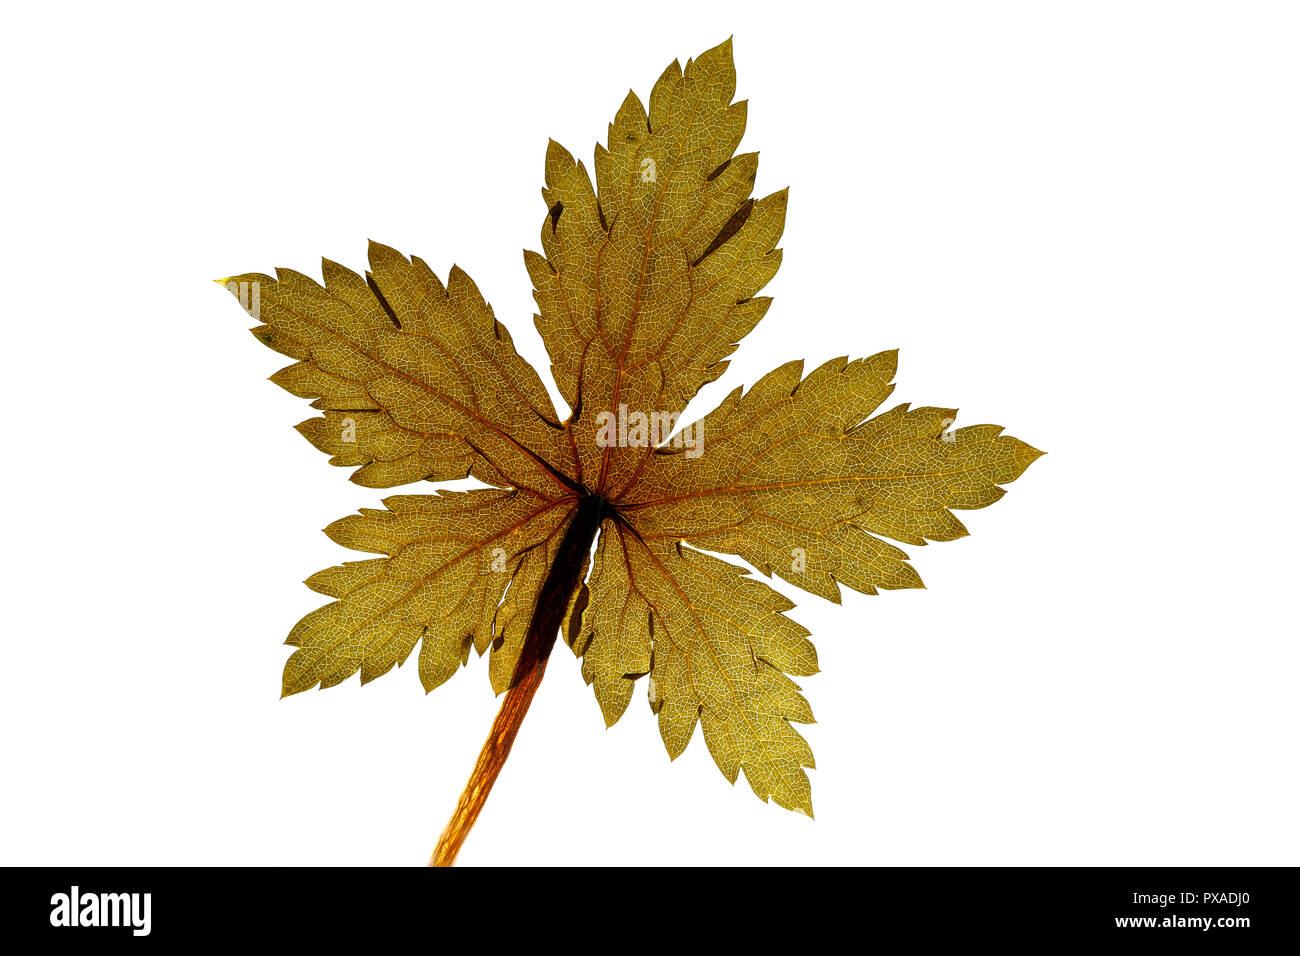 Geranium Leaf on white background Stock Photo